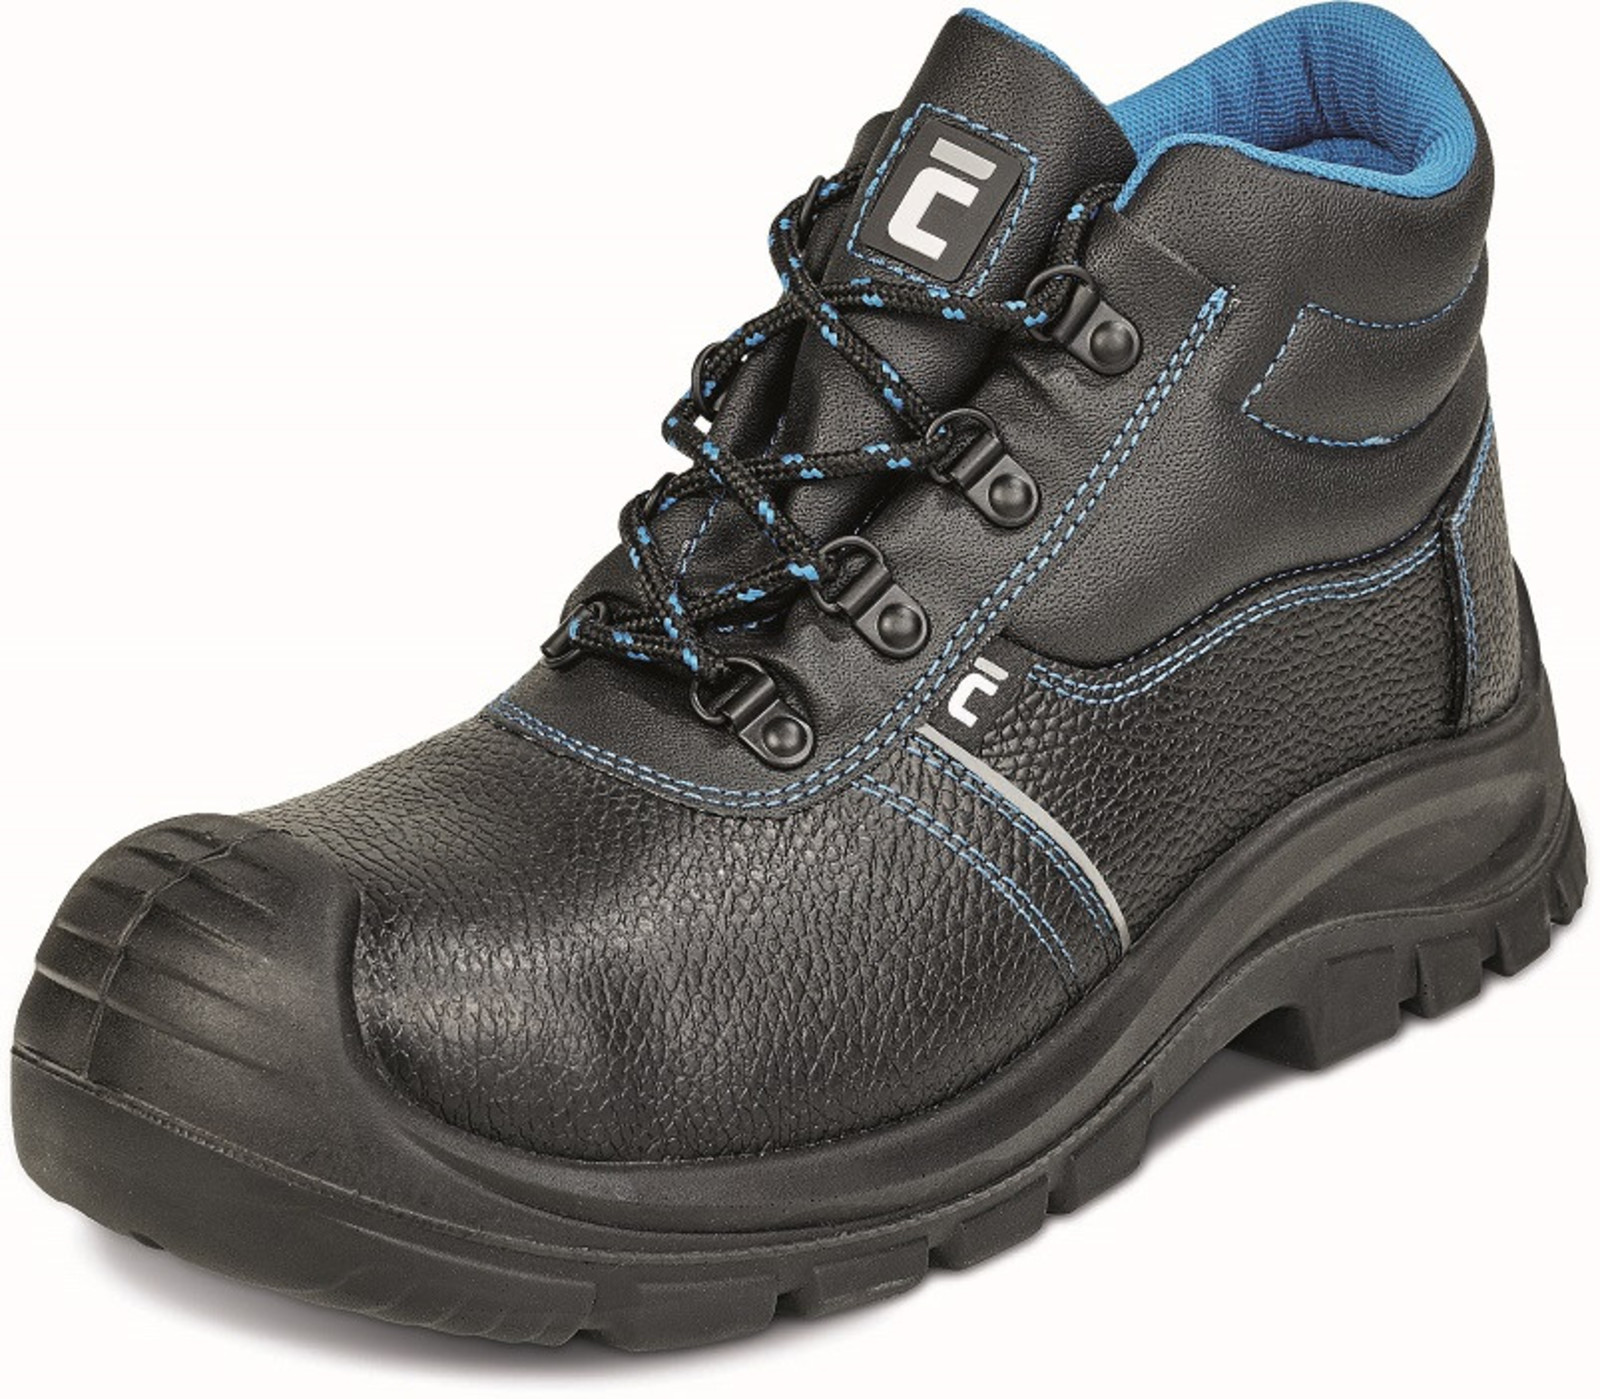 Bezpečnostná obuv Raven XT S1 - veľkosť: 46, farba: čierna